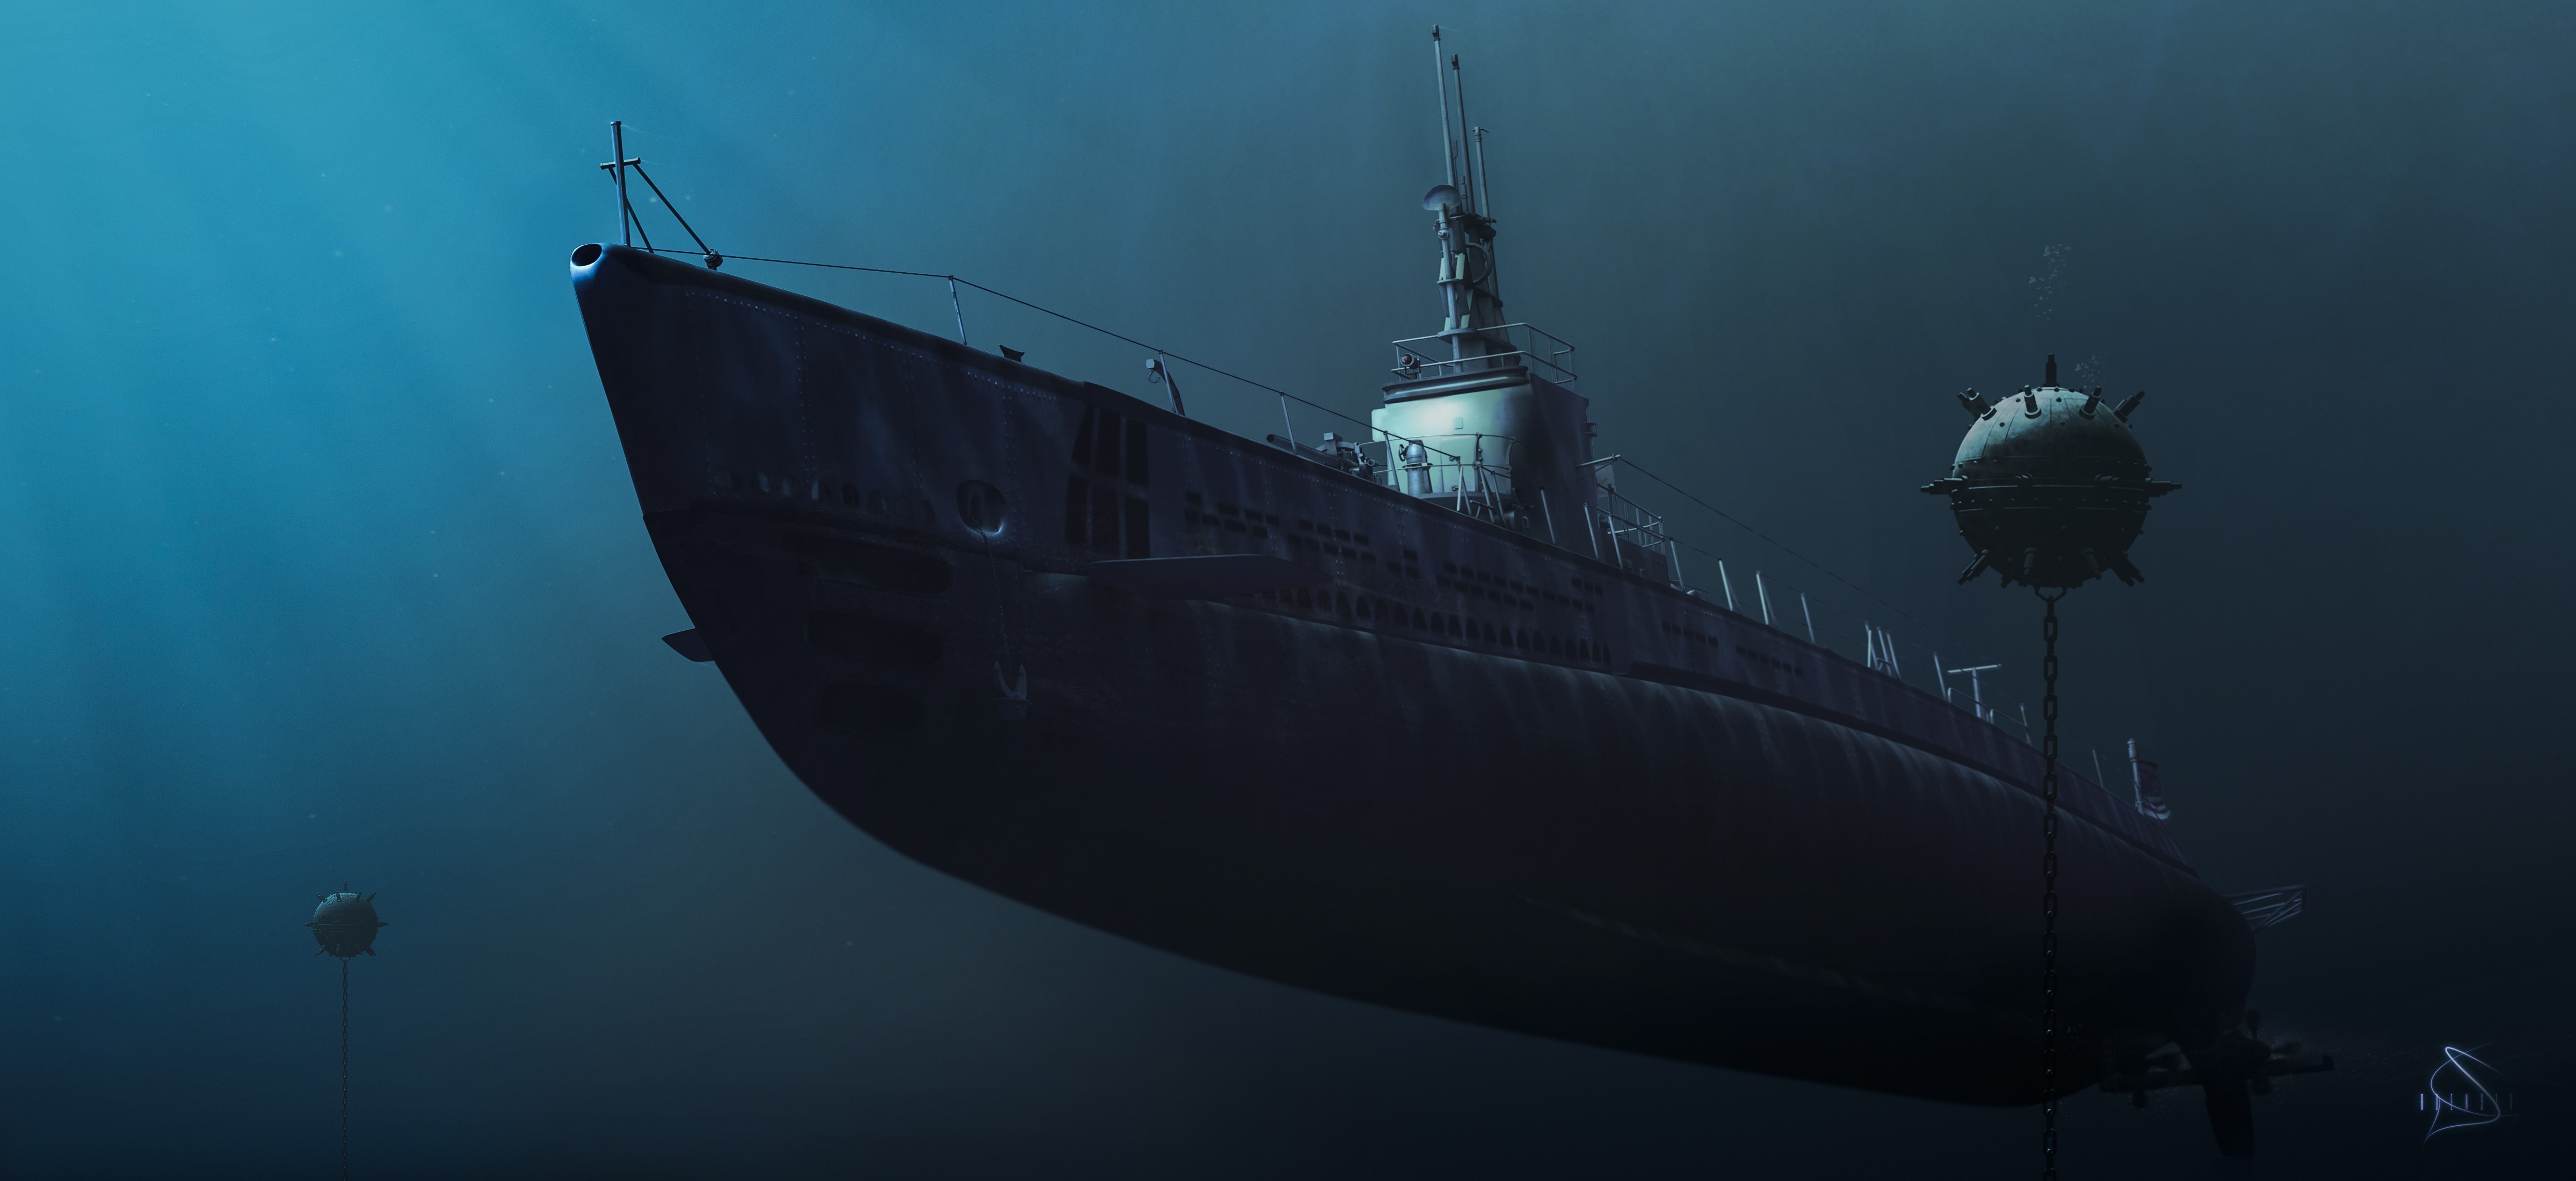 Zastaki.com - Подводная лодка среди мин